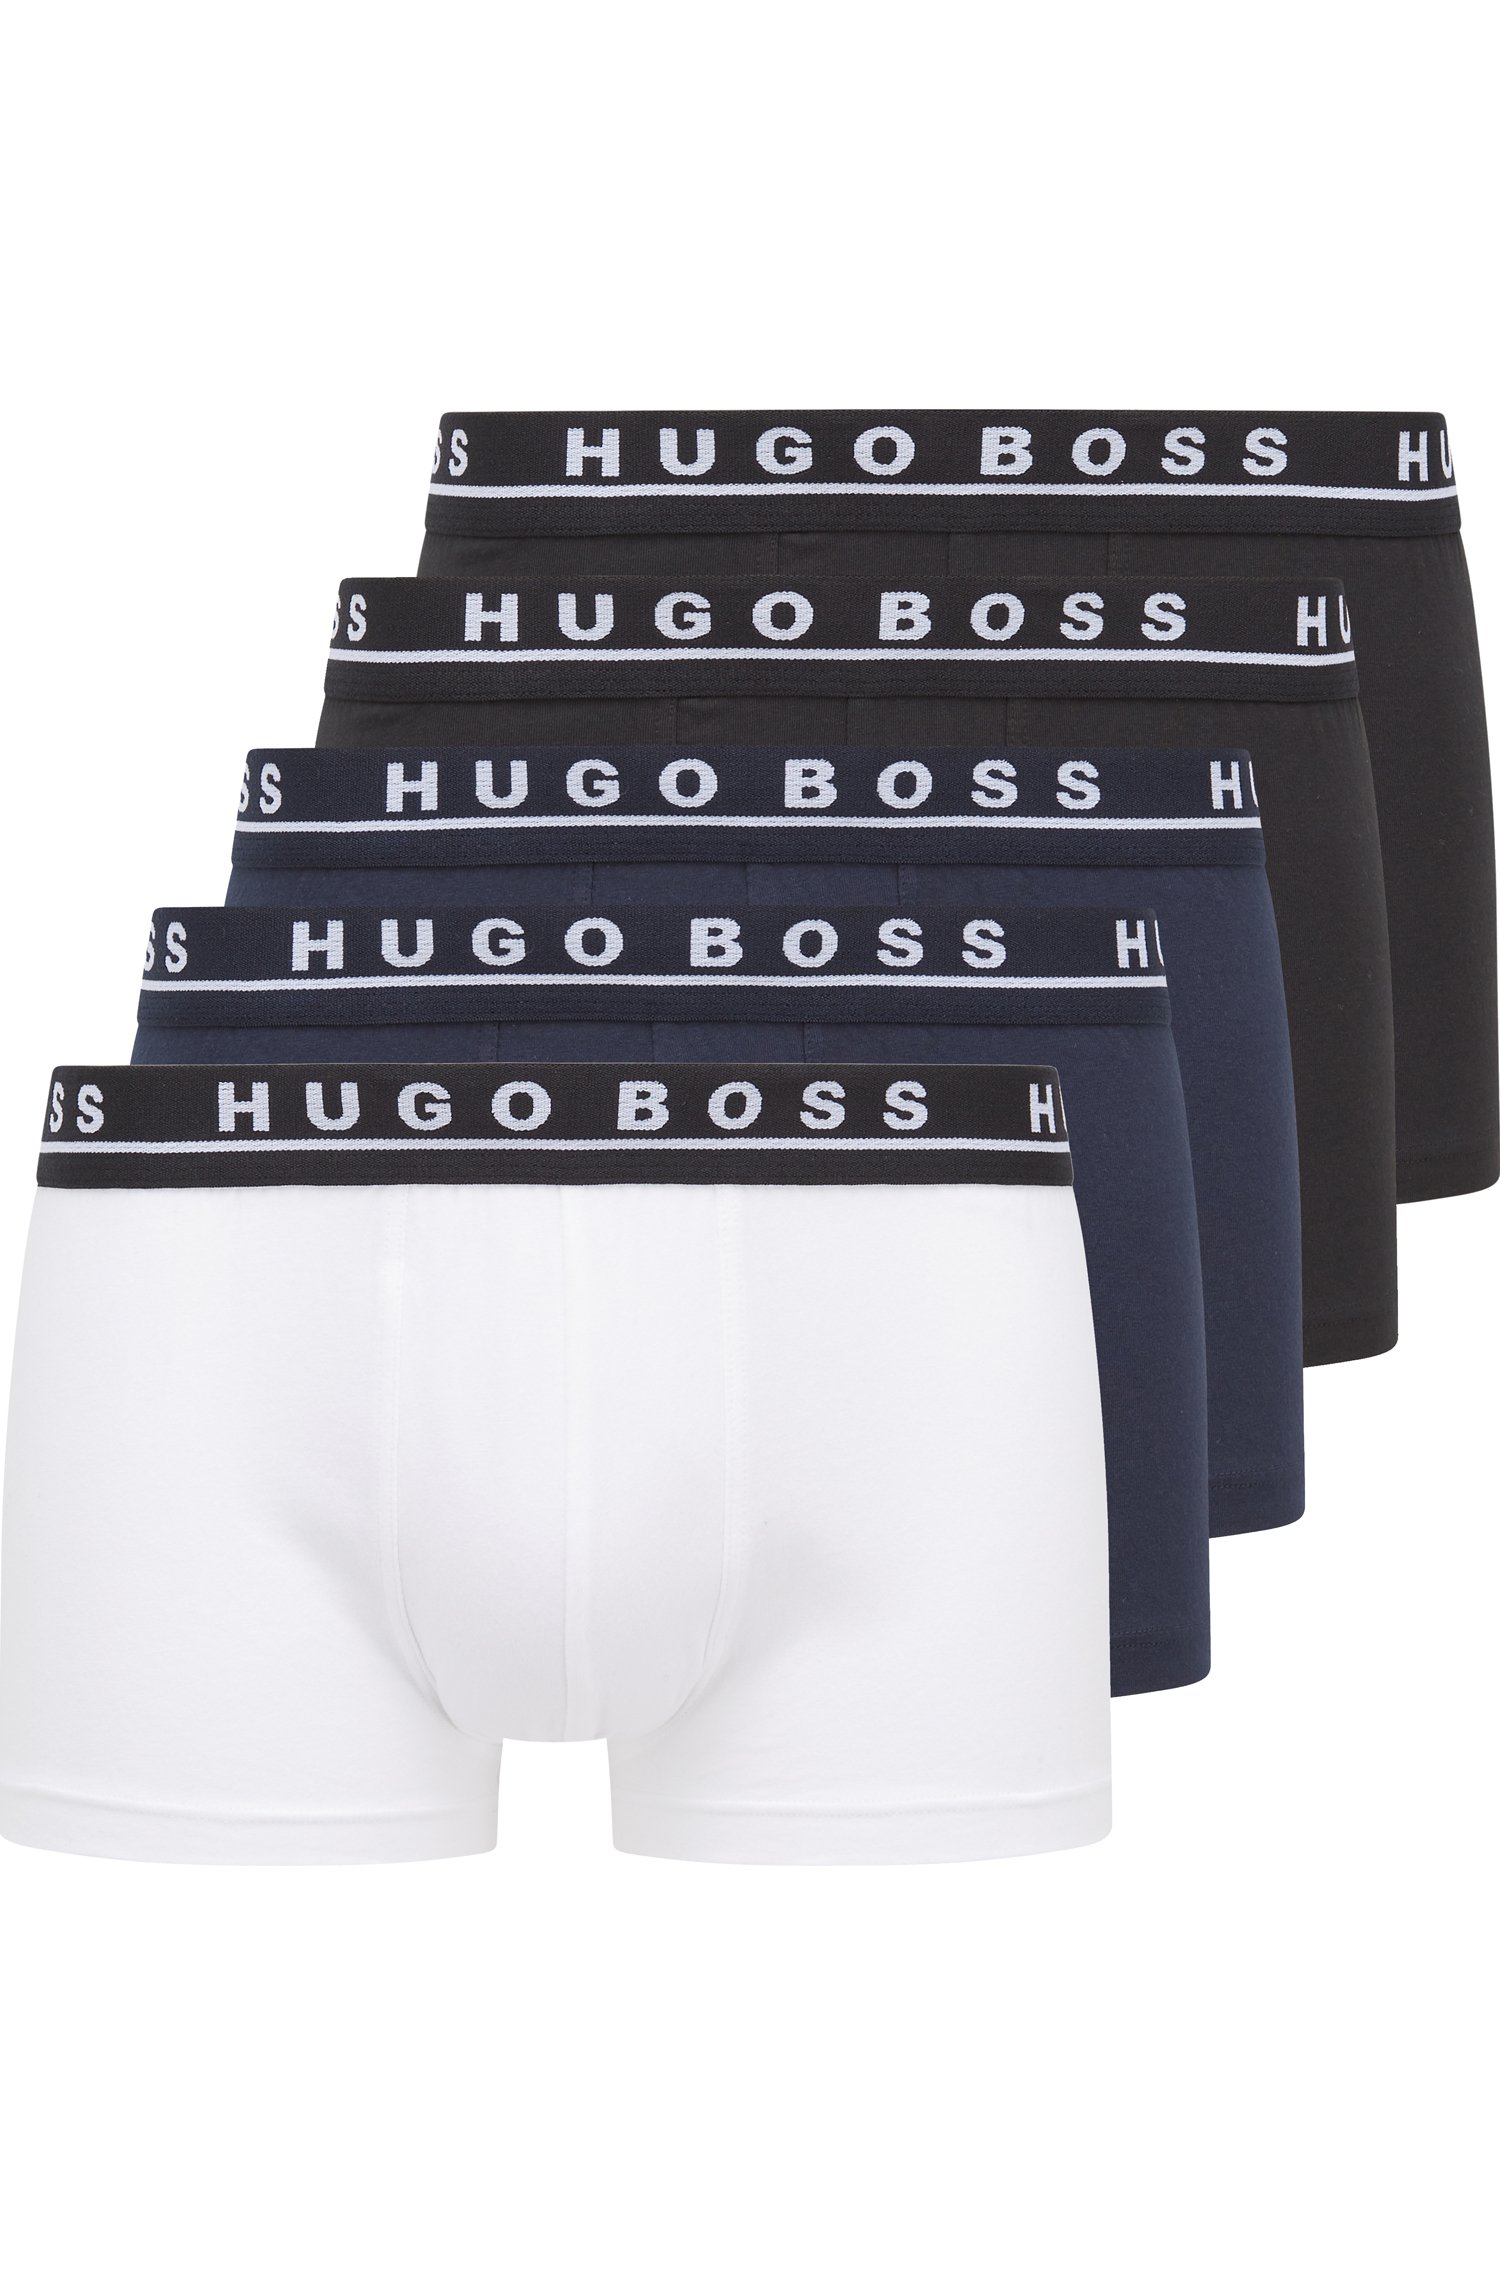 Paquete de cinco calzoncillos algodón elástico con logos en la cintura